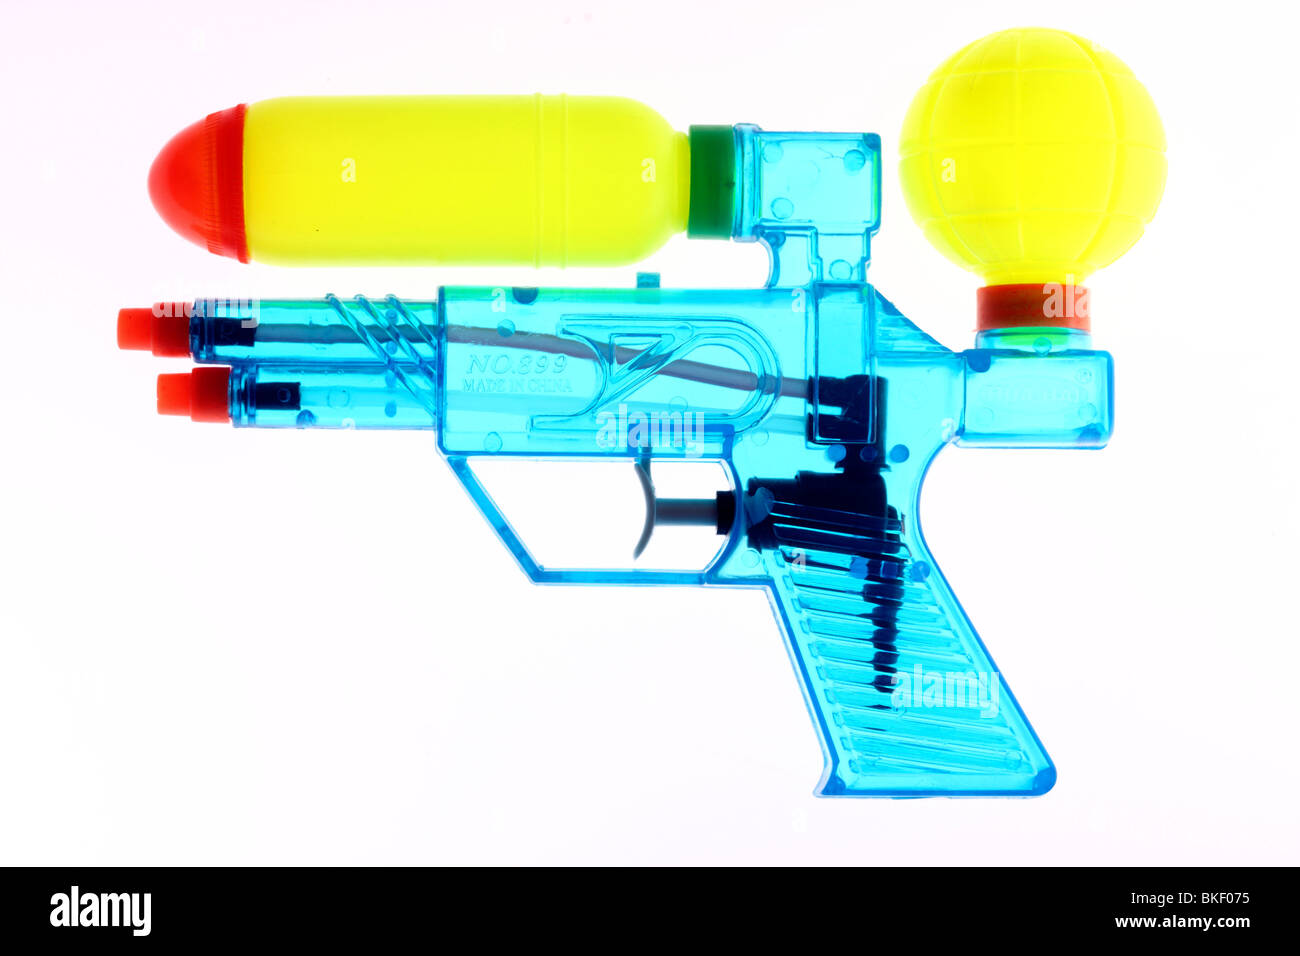 Pistola ad acqua, acqua la pistola giocattolo, trasparente. Foto Stock